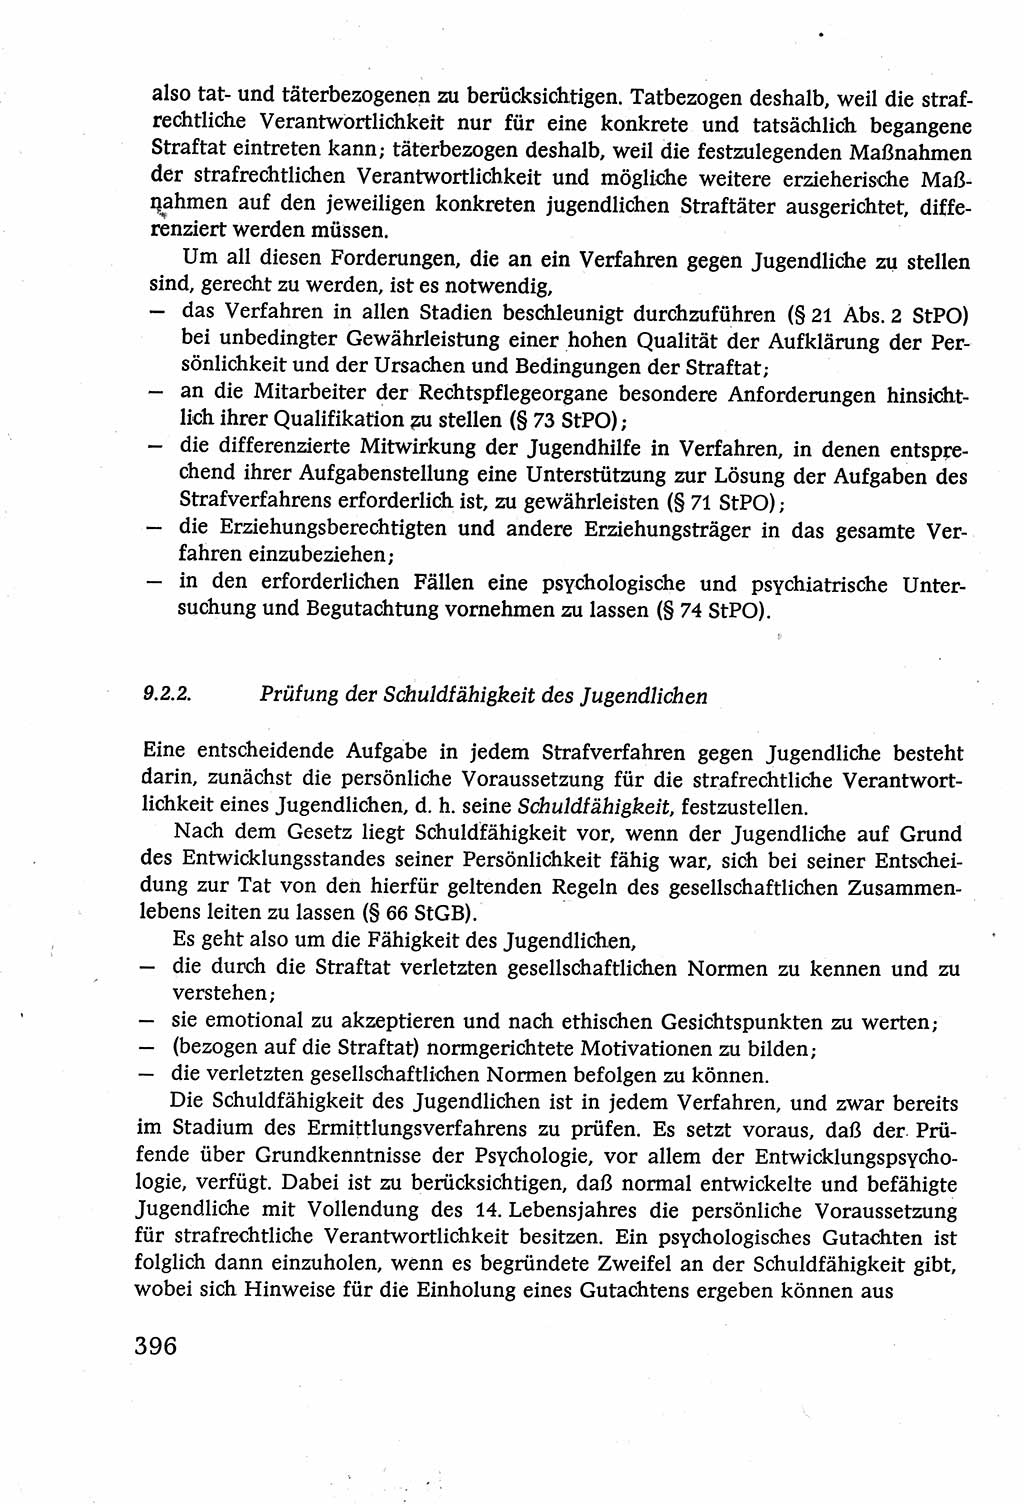 Strafverfahrensrecht [Deutsche Demokratische Republik (DDR)], Lehrbuch 1977, Seite 396 (Strafverf.-R. DDR Lb. 1977, S. 396)